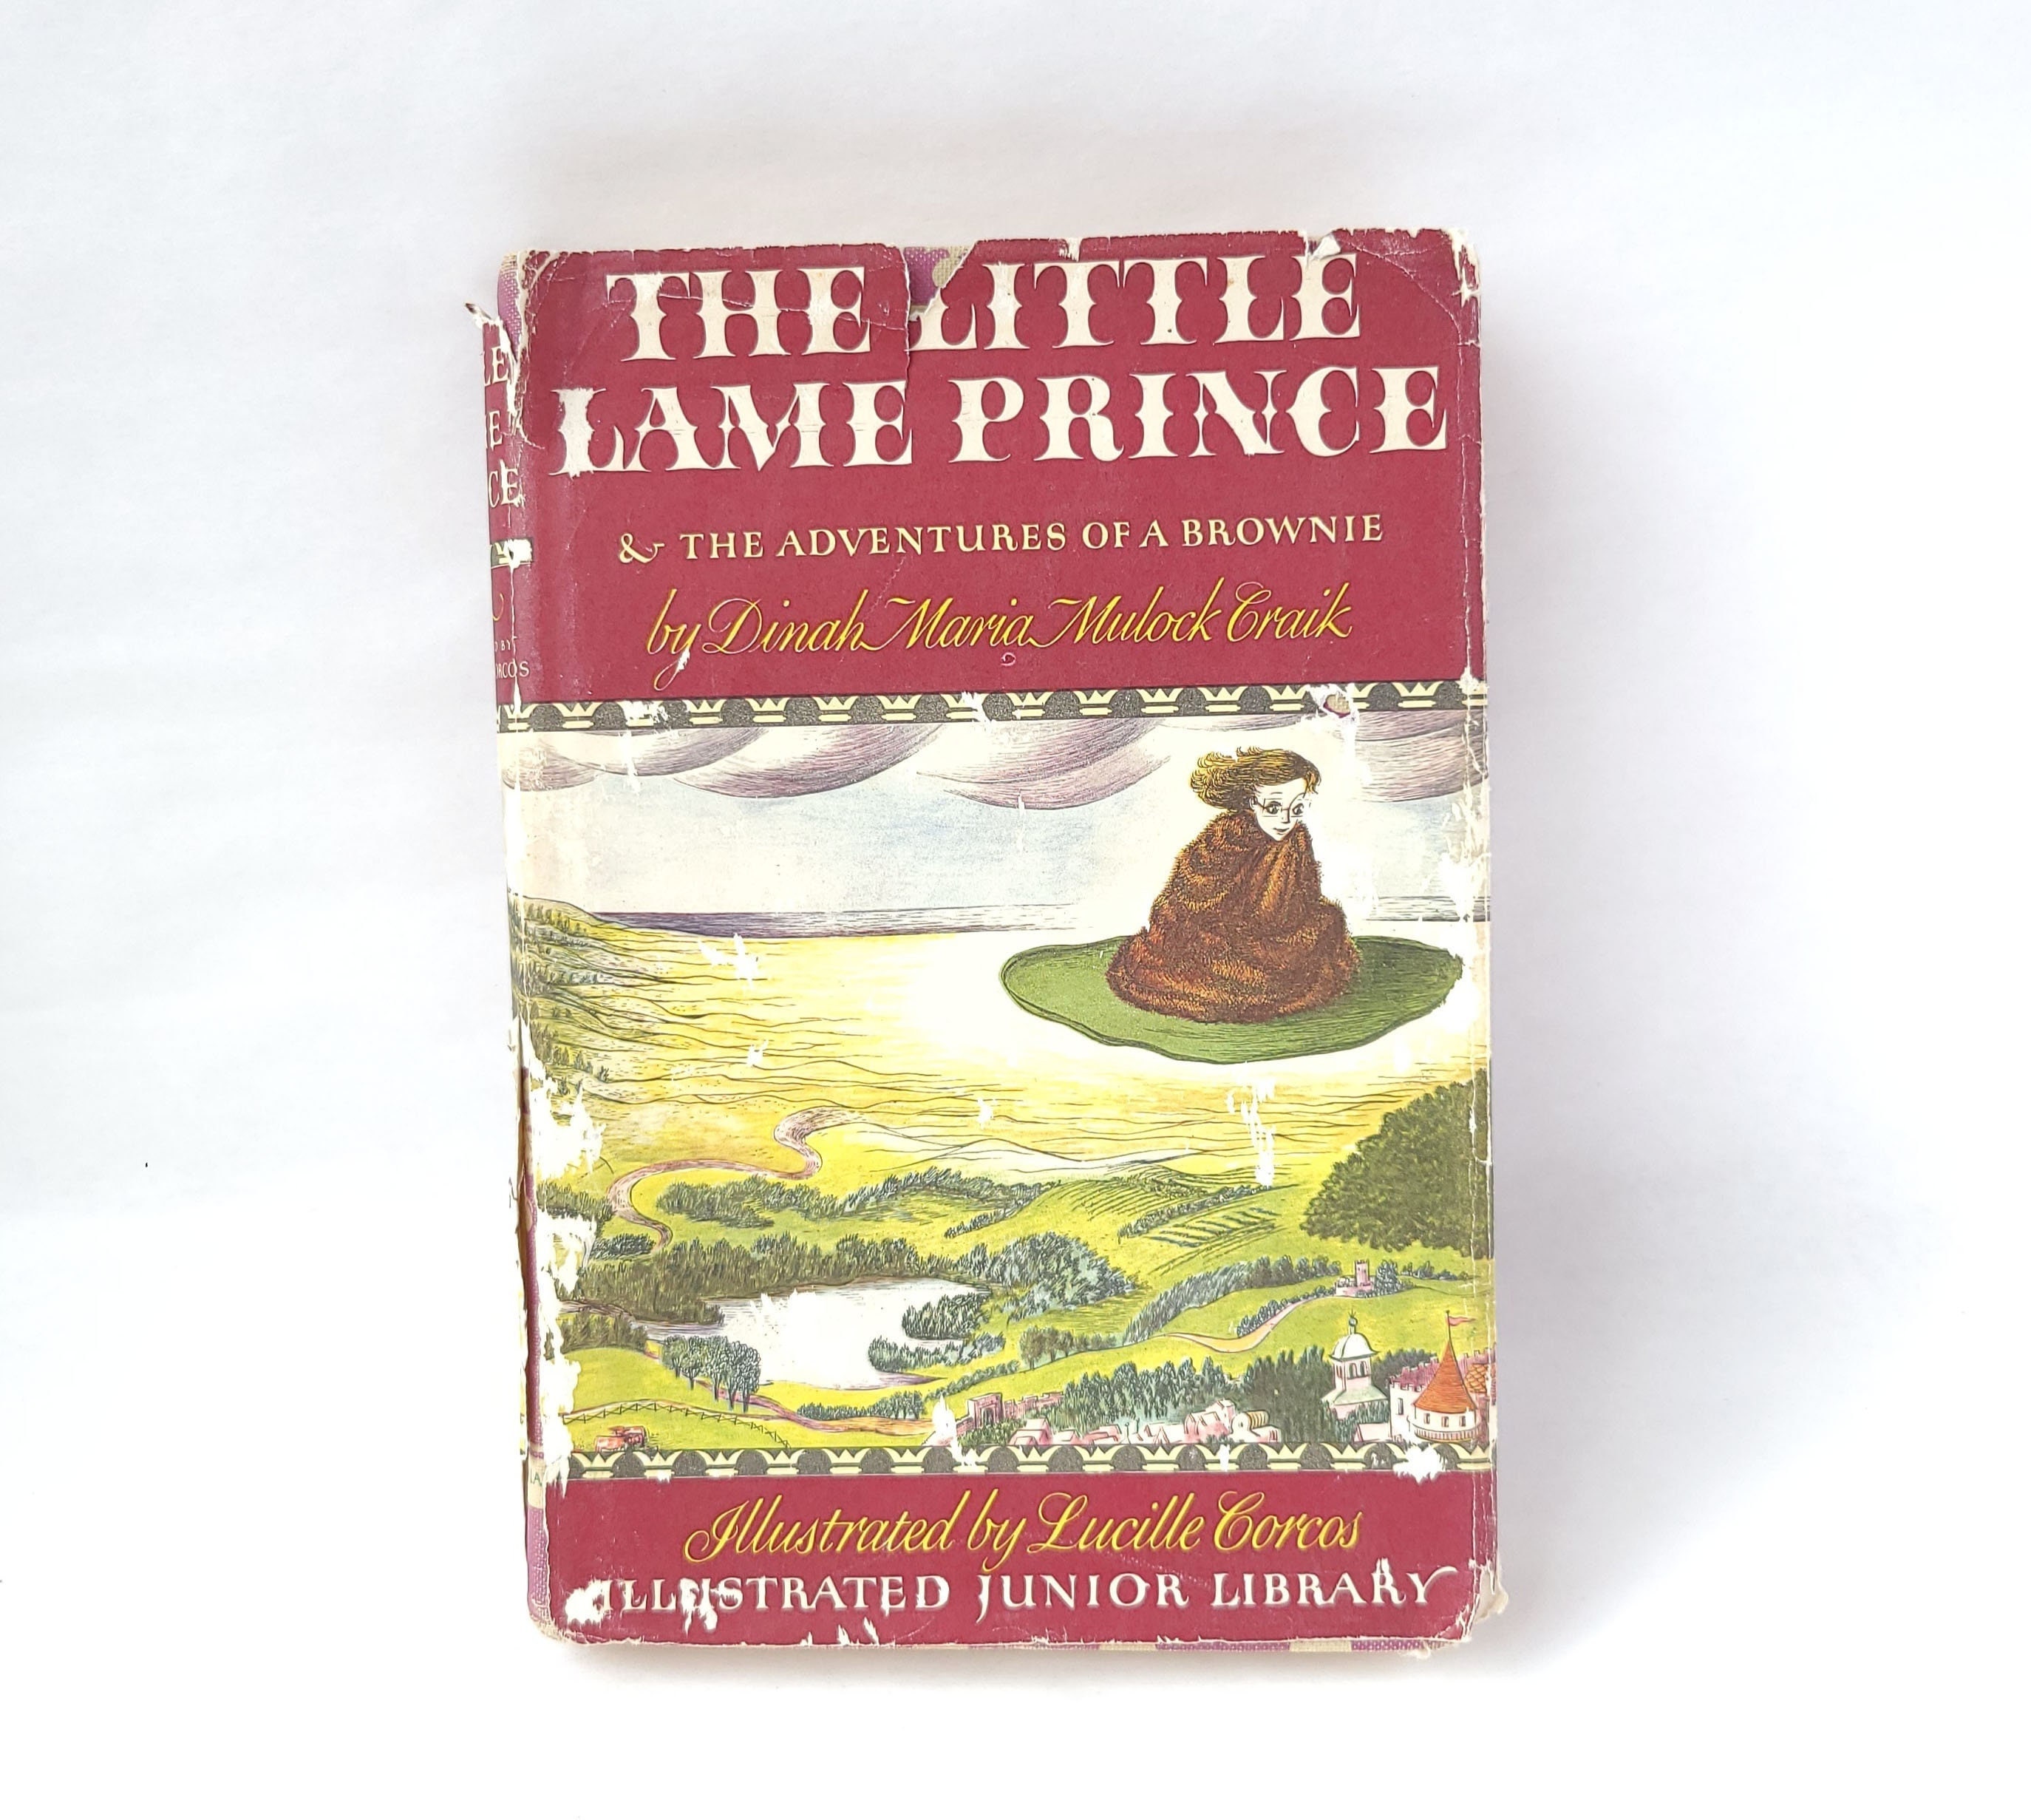 El Principito: Libro con Rimas para Niños [The Little Prince: Book